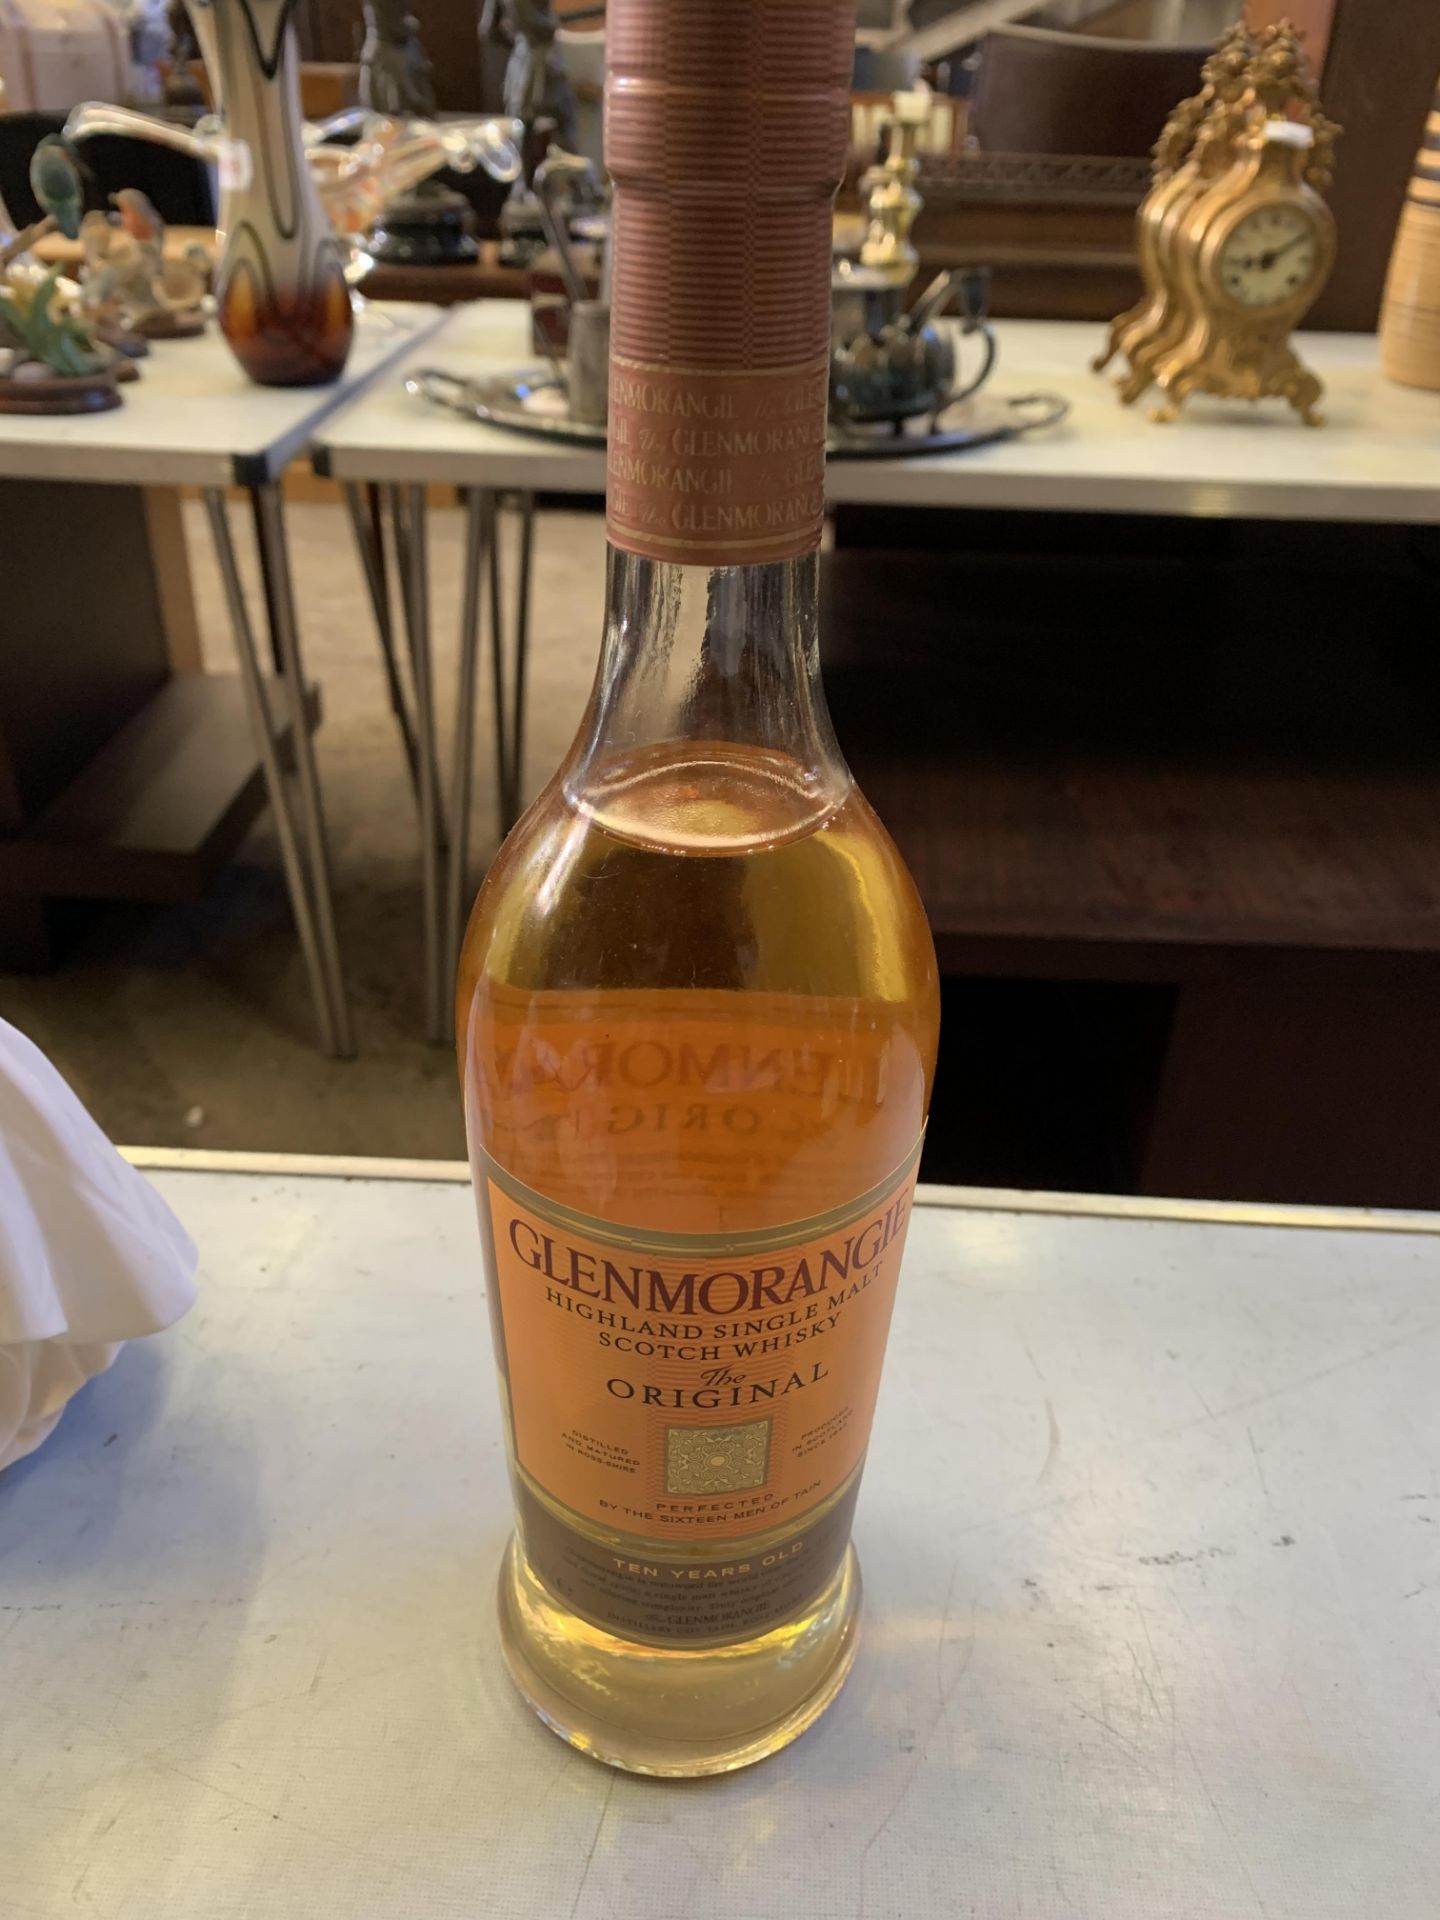 70cl bottle of Glenmorangie Highland Single Malt Scotch Whisky